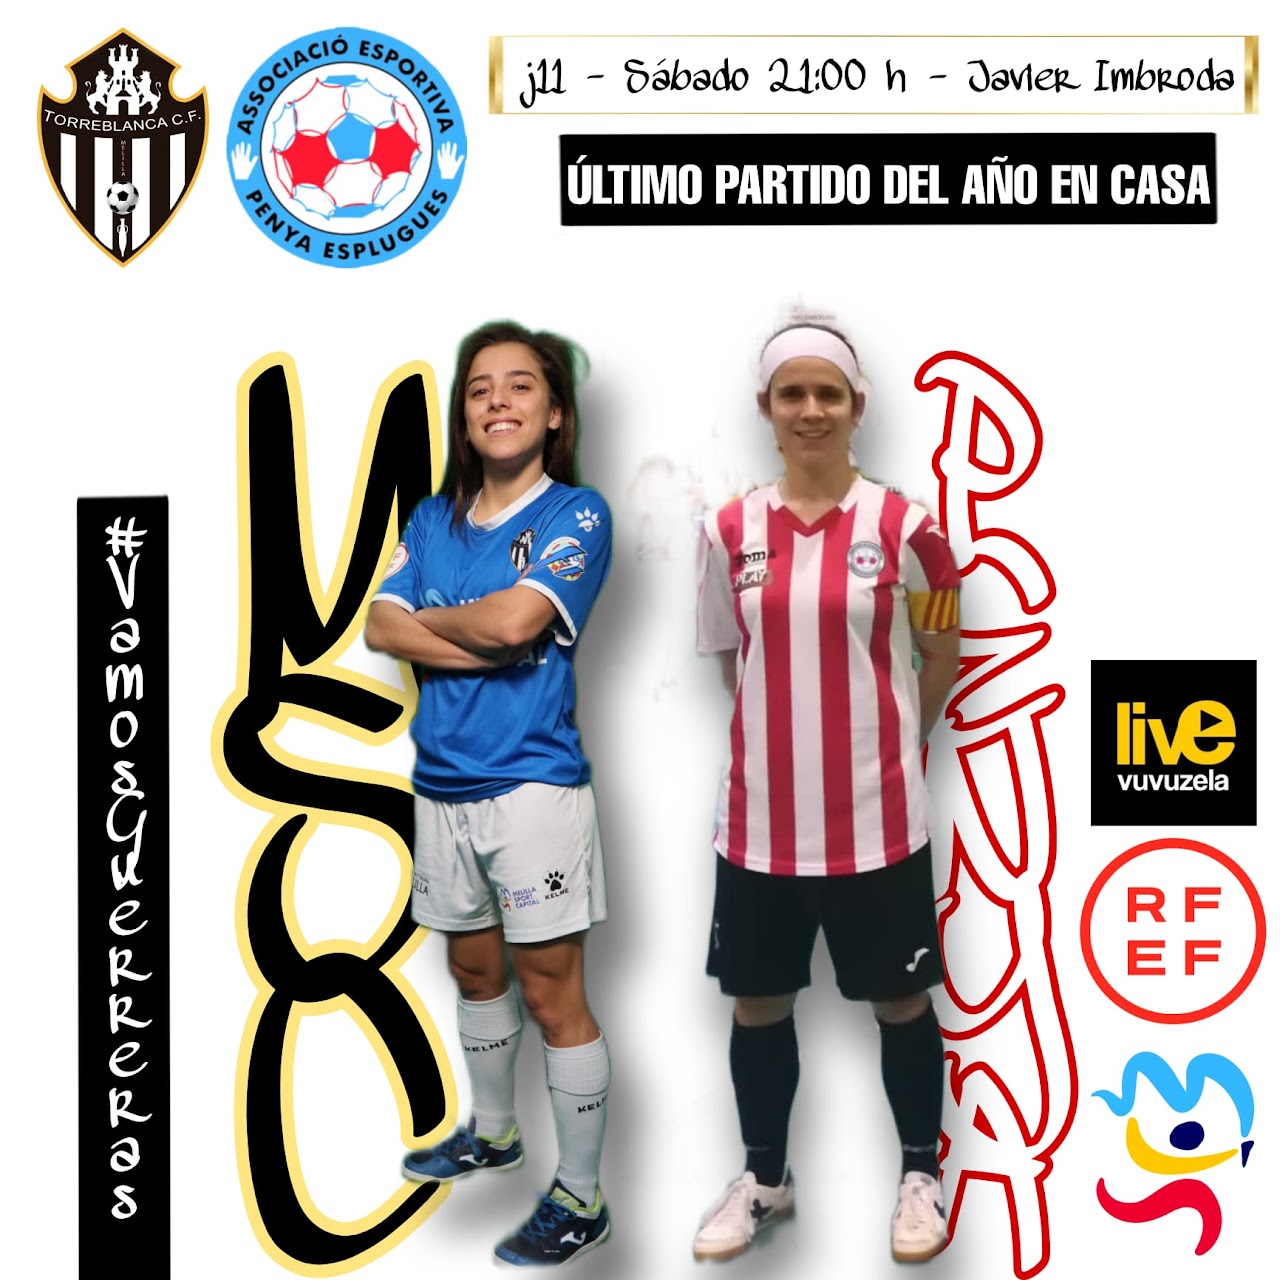 Previa del Partido de 1ª División de Fútbol Sala Femenino: MSC Torreblanca - AE Penya Esplugues. Jornada 11ª